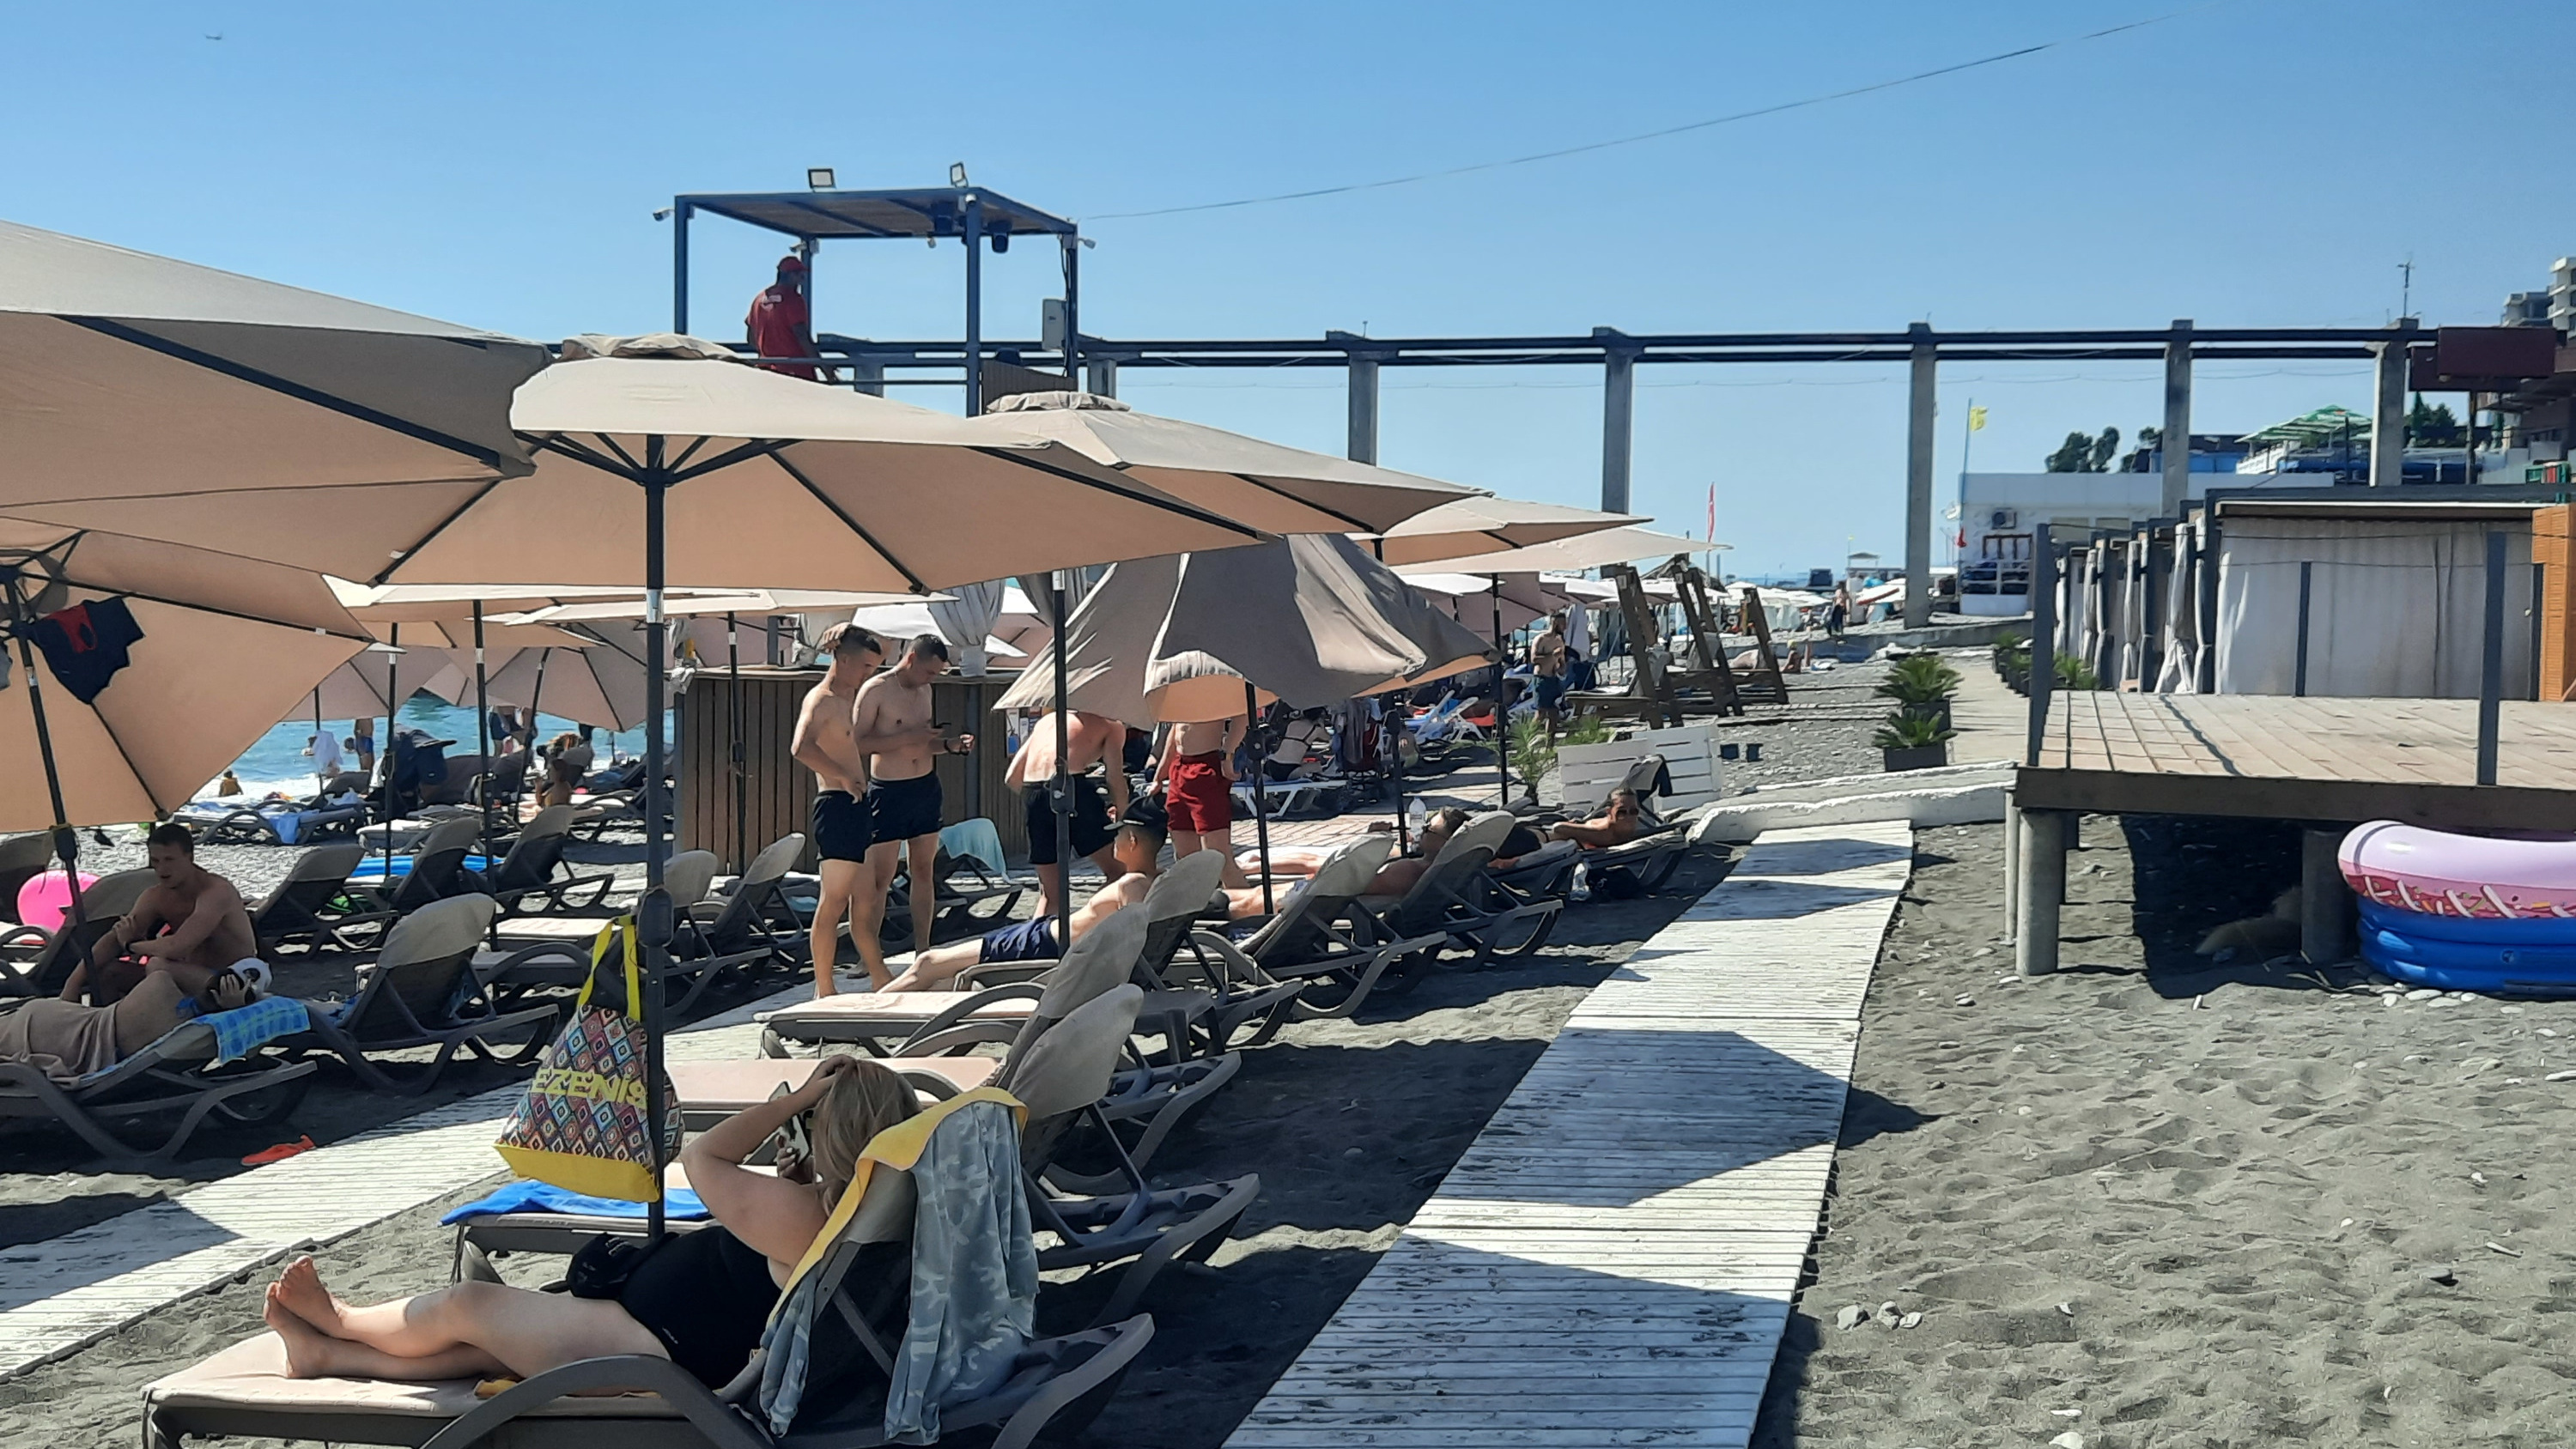 Драки, хамство и высокие цены. Как пляжи встречают туристов в Сочи в этом году